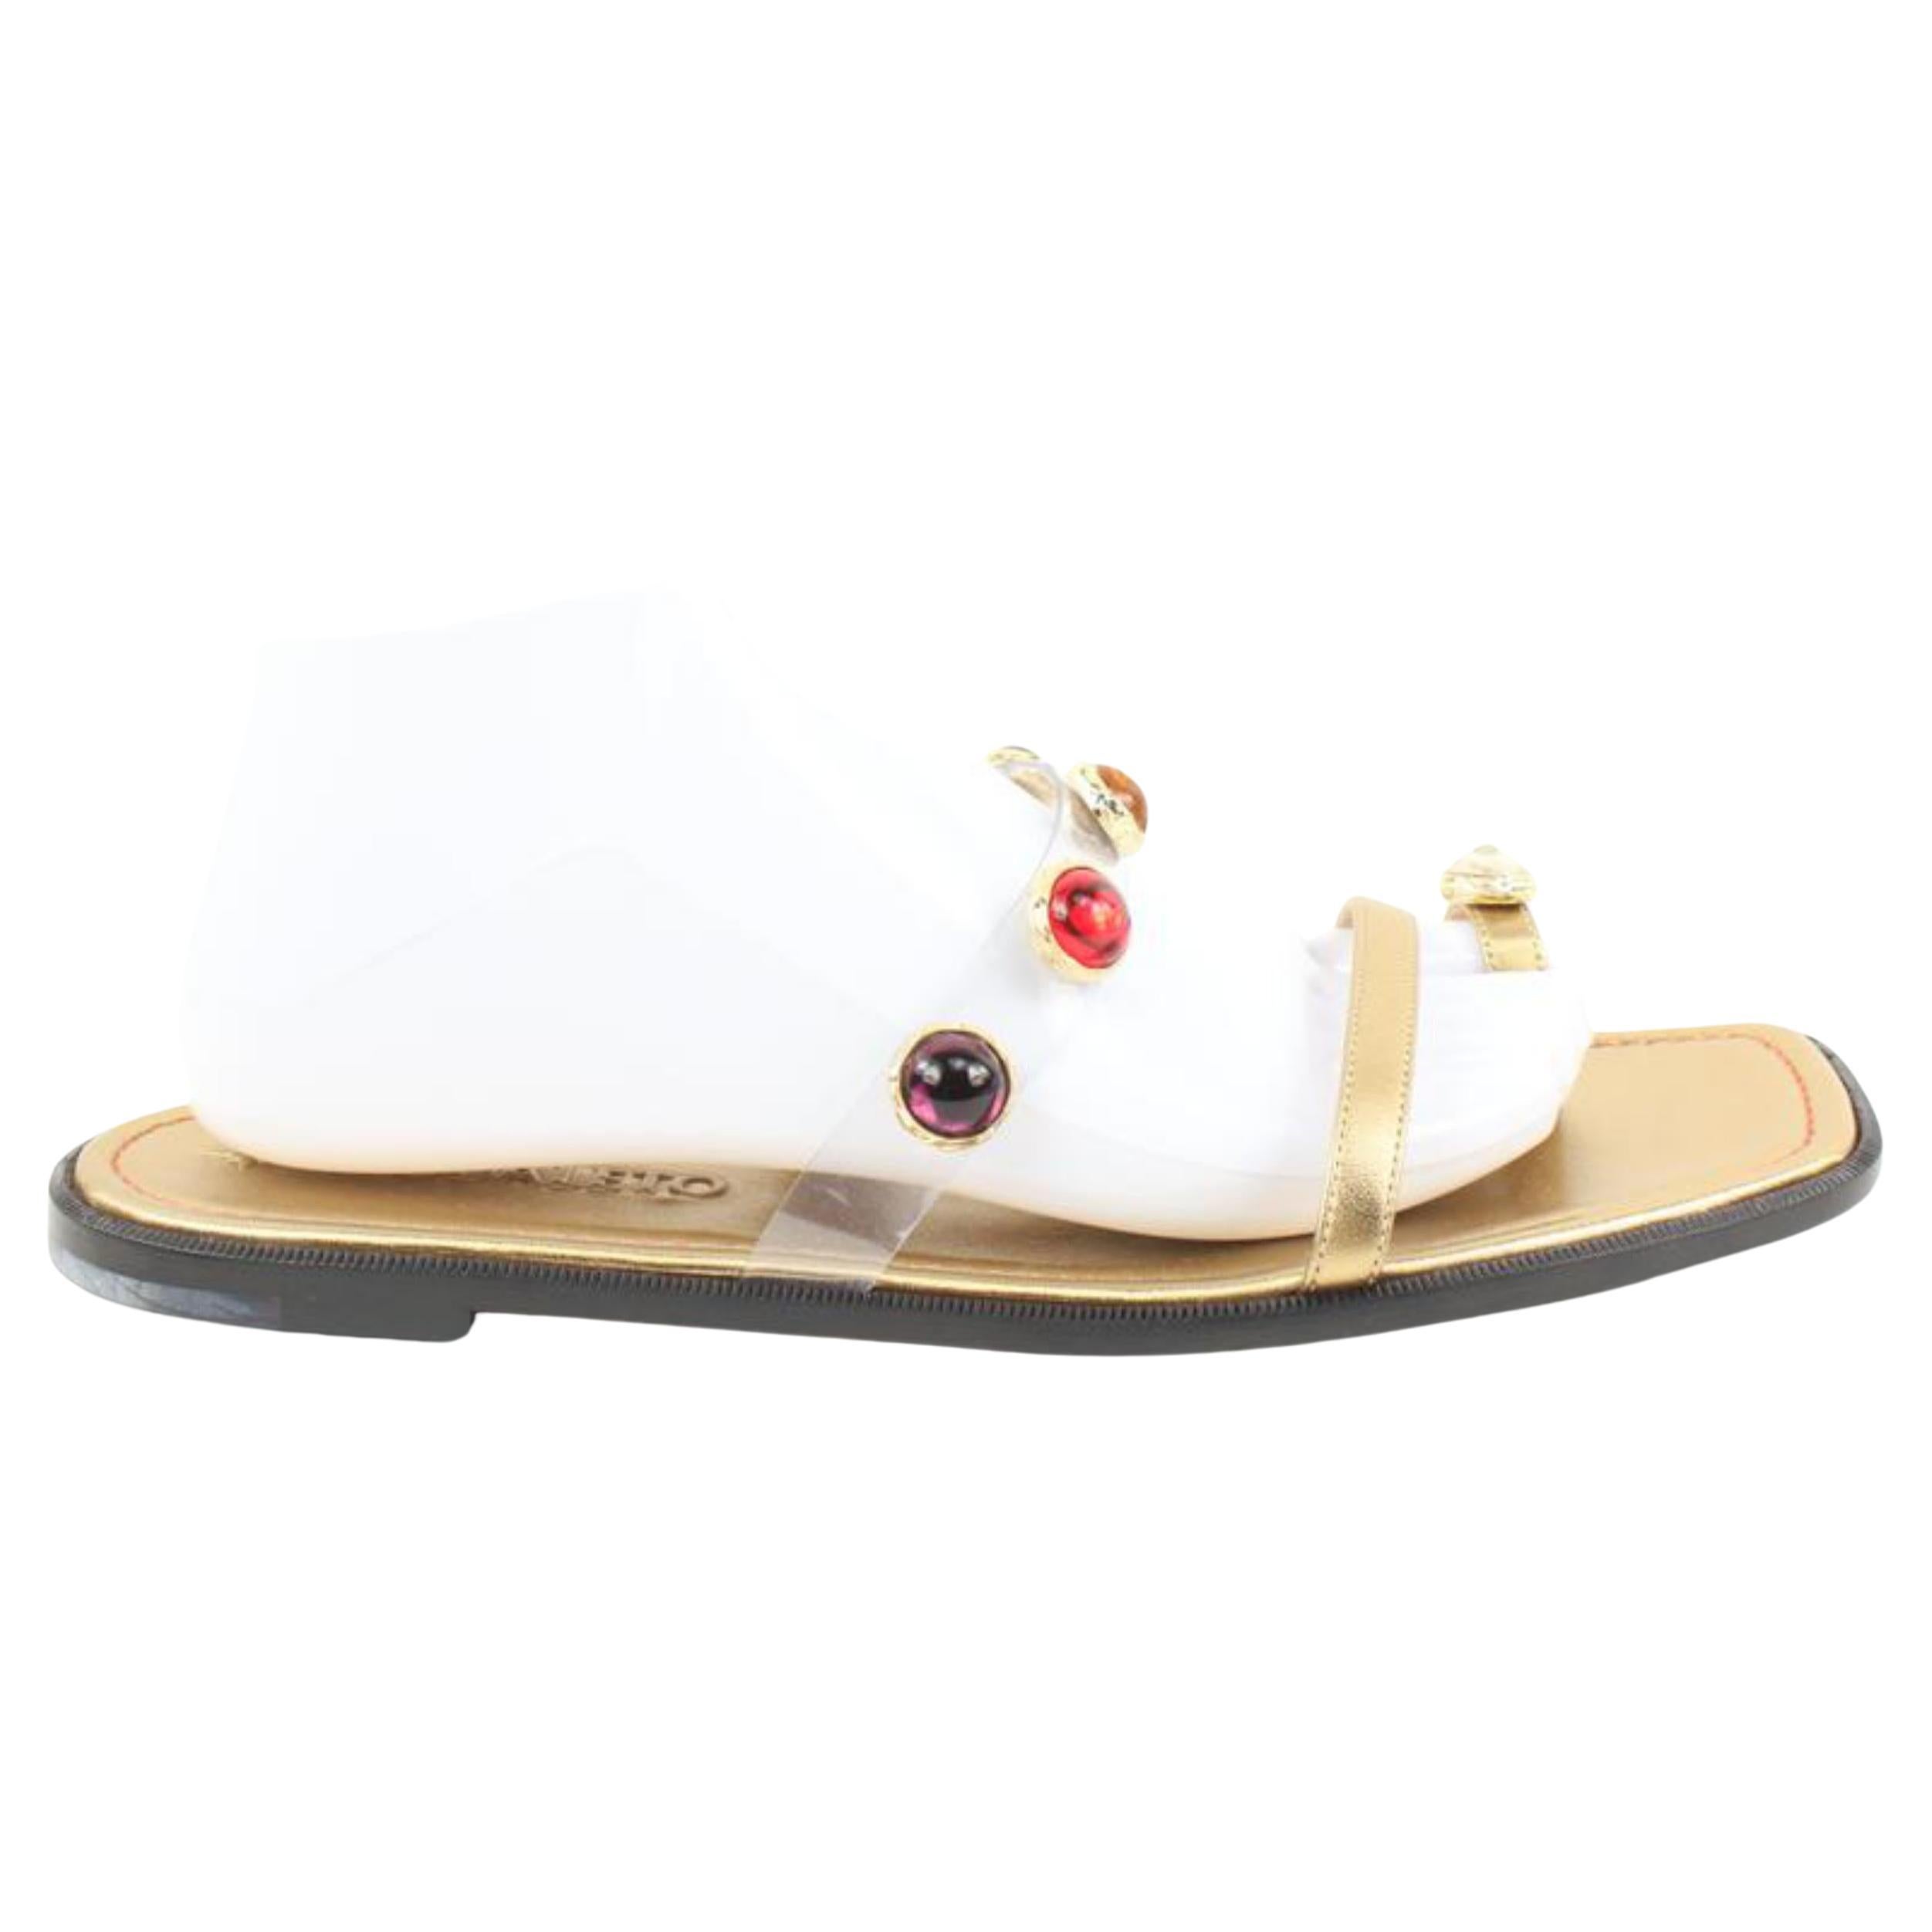 Nodaleto Sz 38 $735 Bulla Salem Flat Jeweled Gold Sandals 39n31s 40n321s